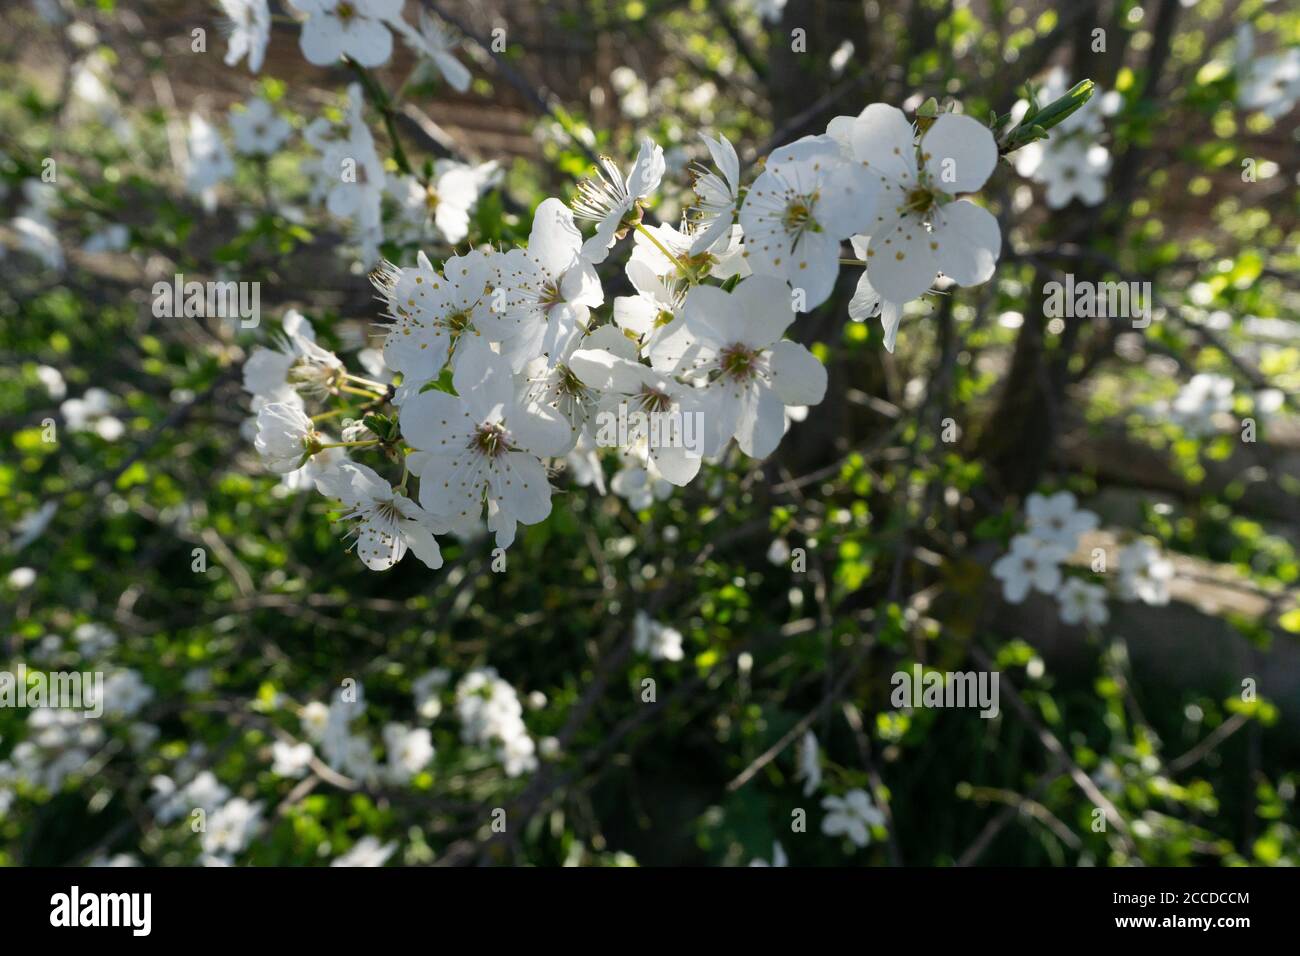 Prunus avium Stock Photo